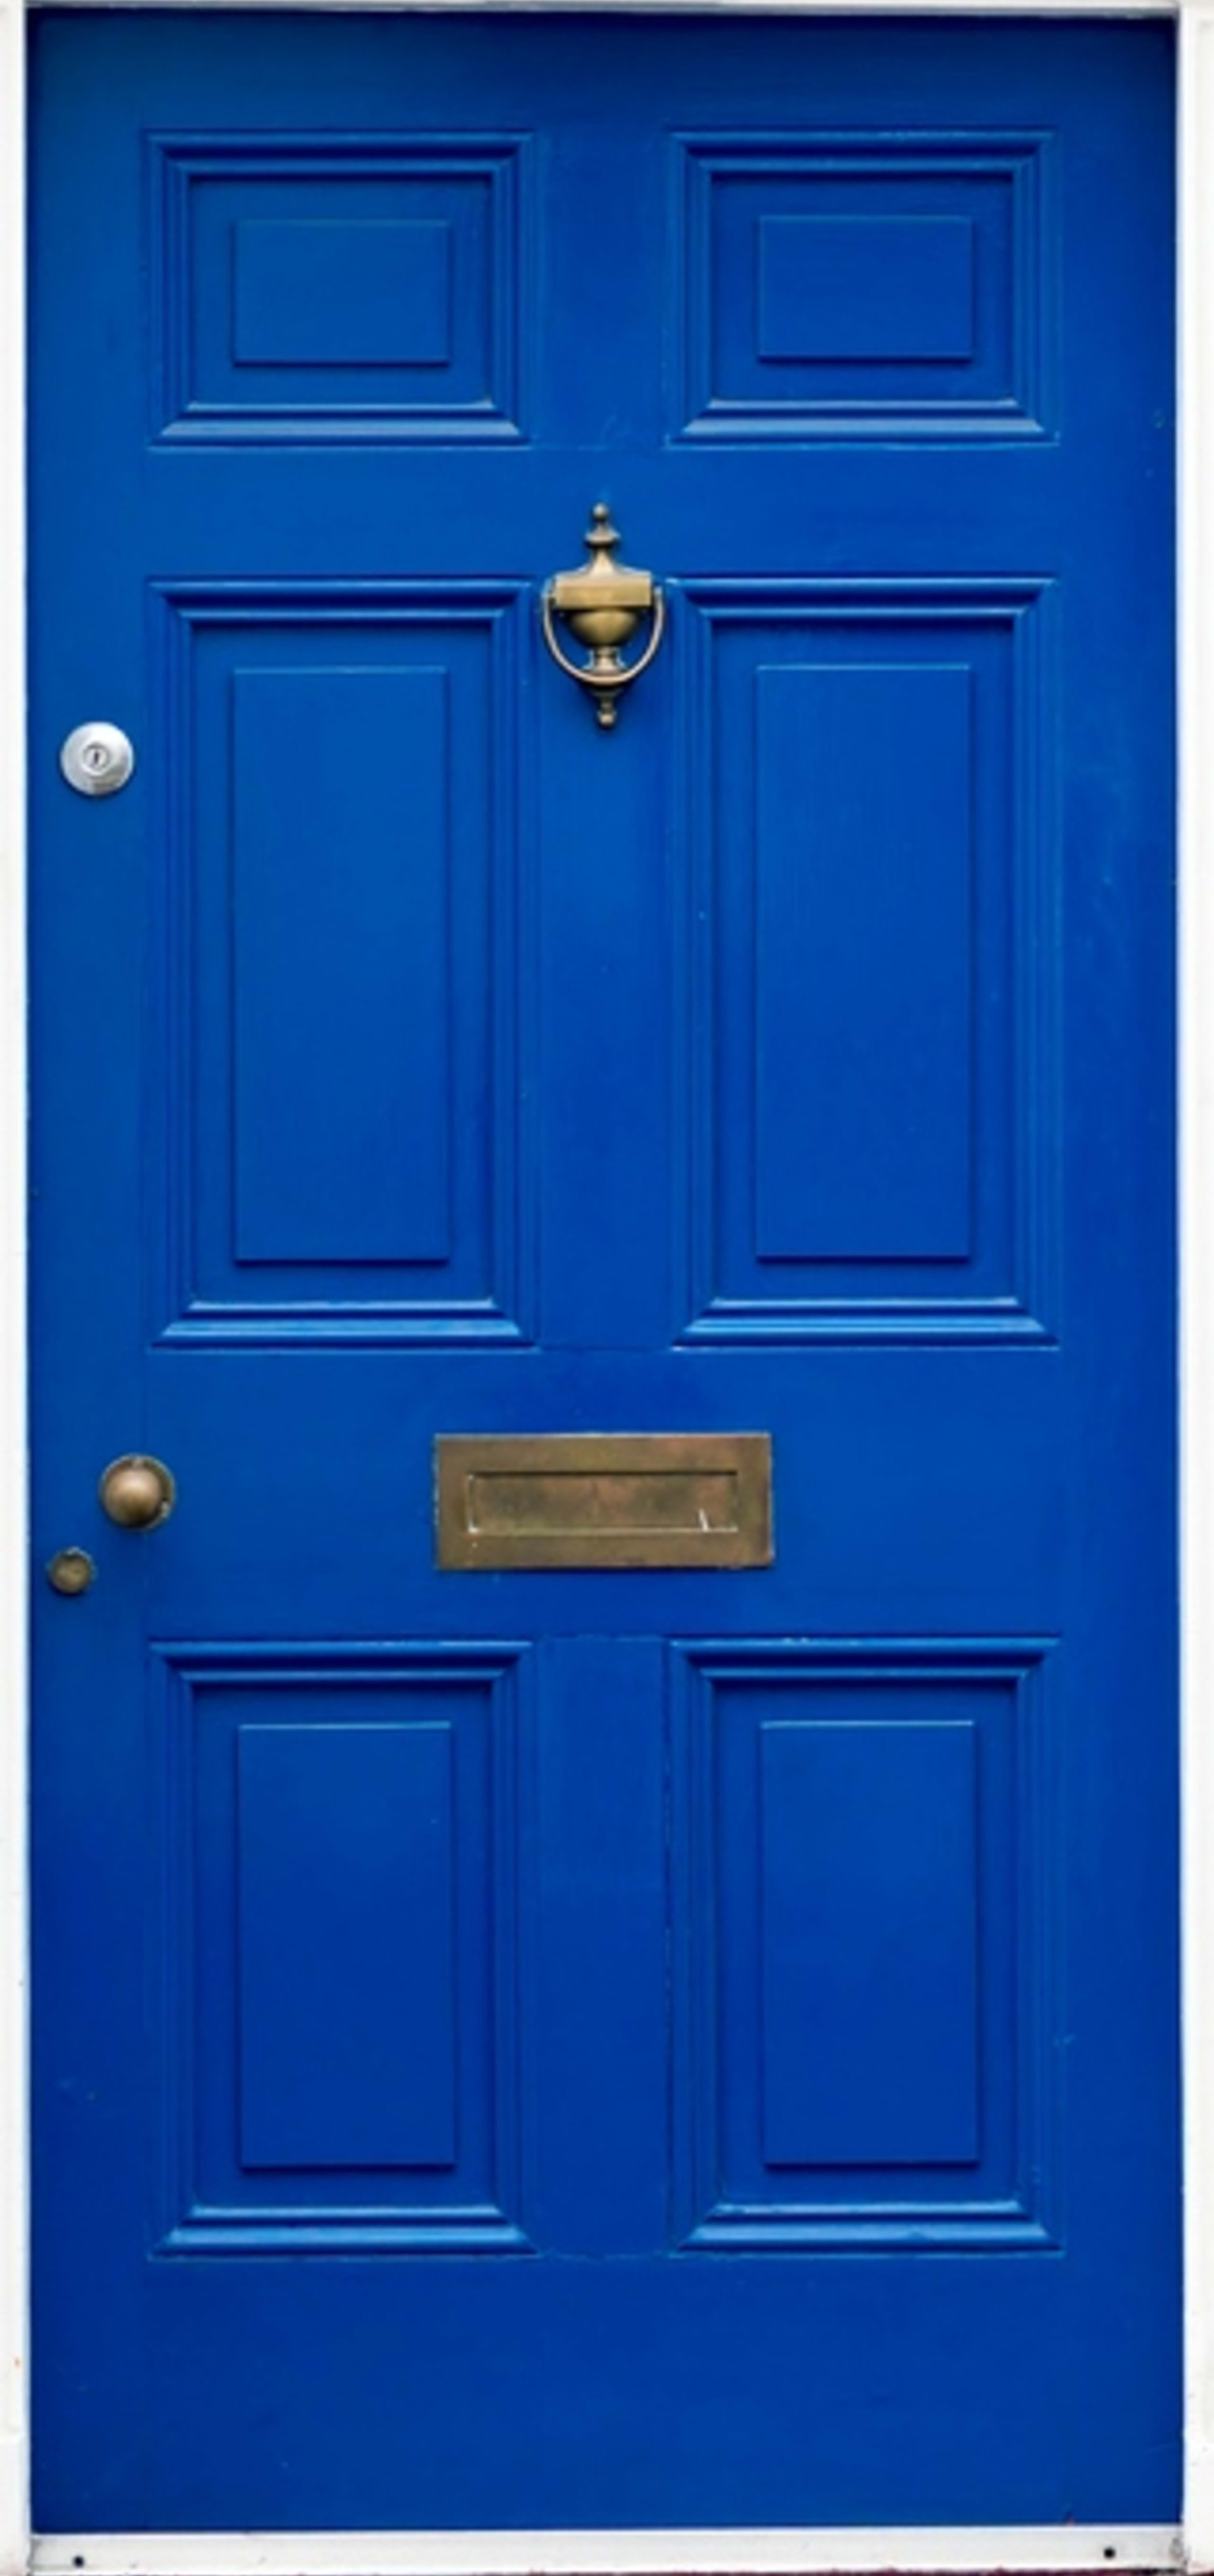 test dveře - modrá